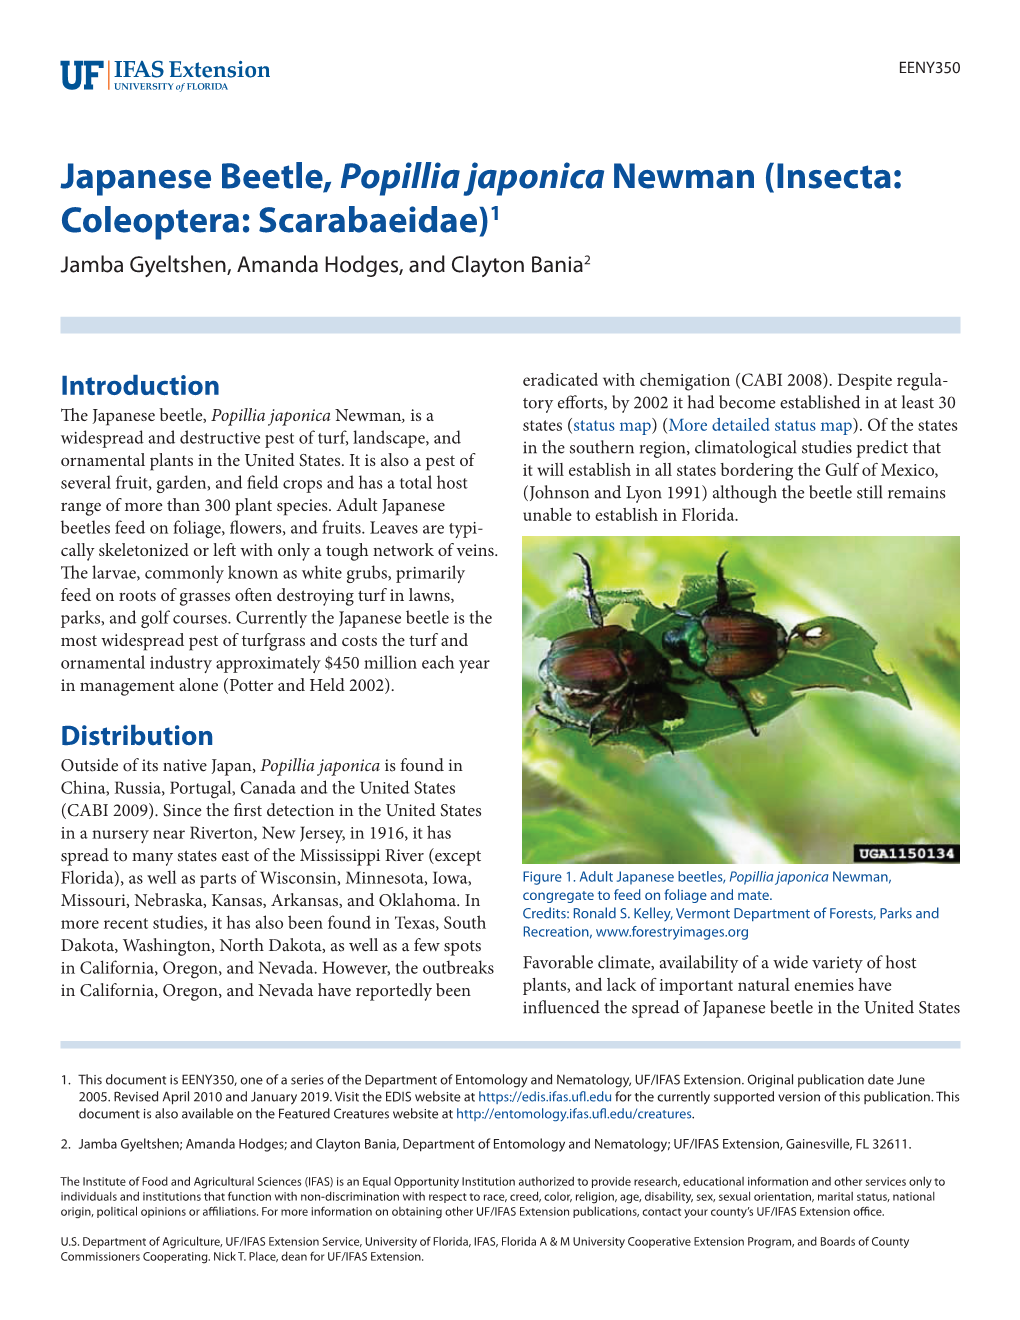 Japanese Beetle, Popillia Japonica Newman (Insecta: Coleoptera: Scarabaeidae)1 Jamba Gyeltshen, Amanda Hodges, and Clayton Bania2